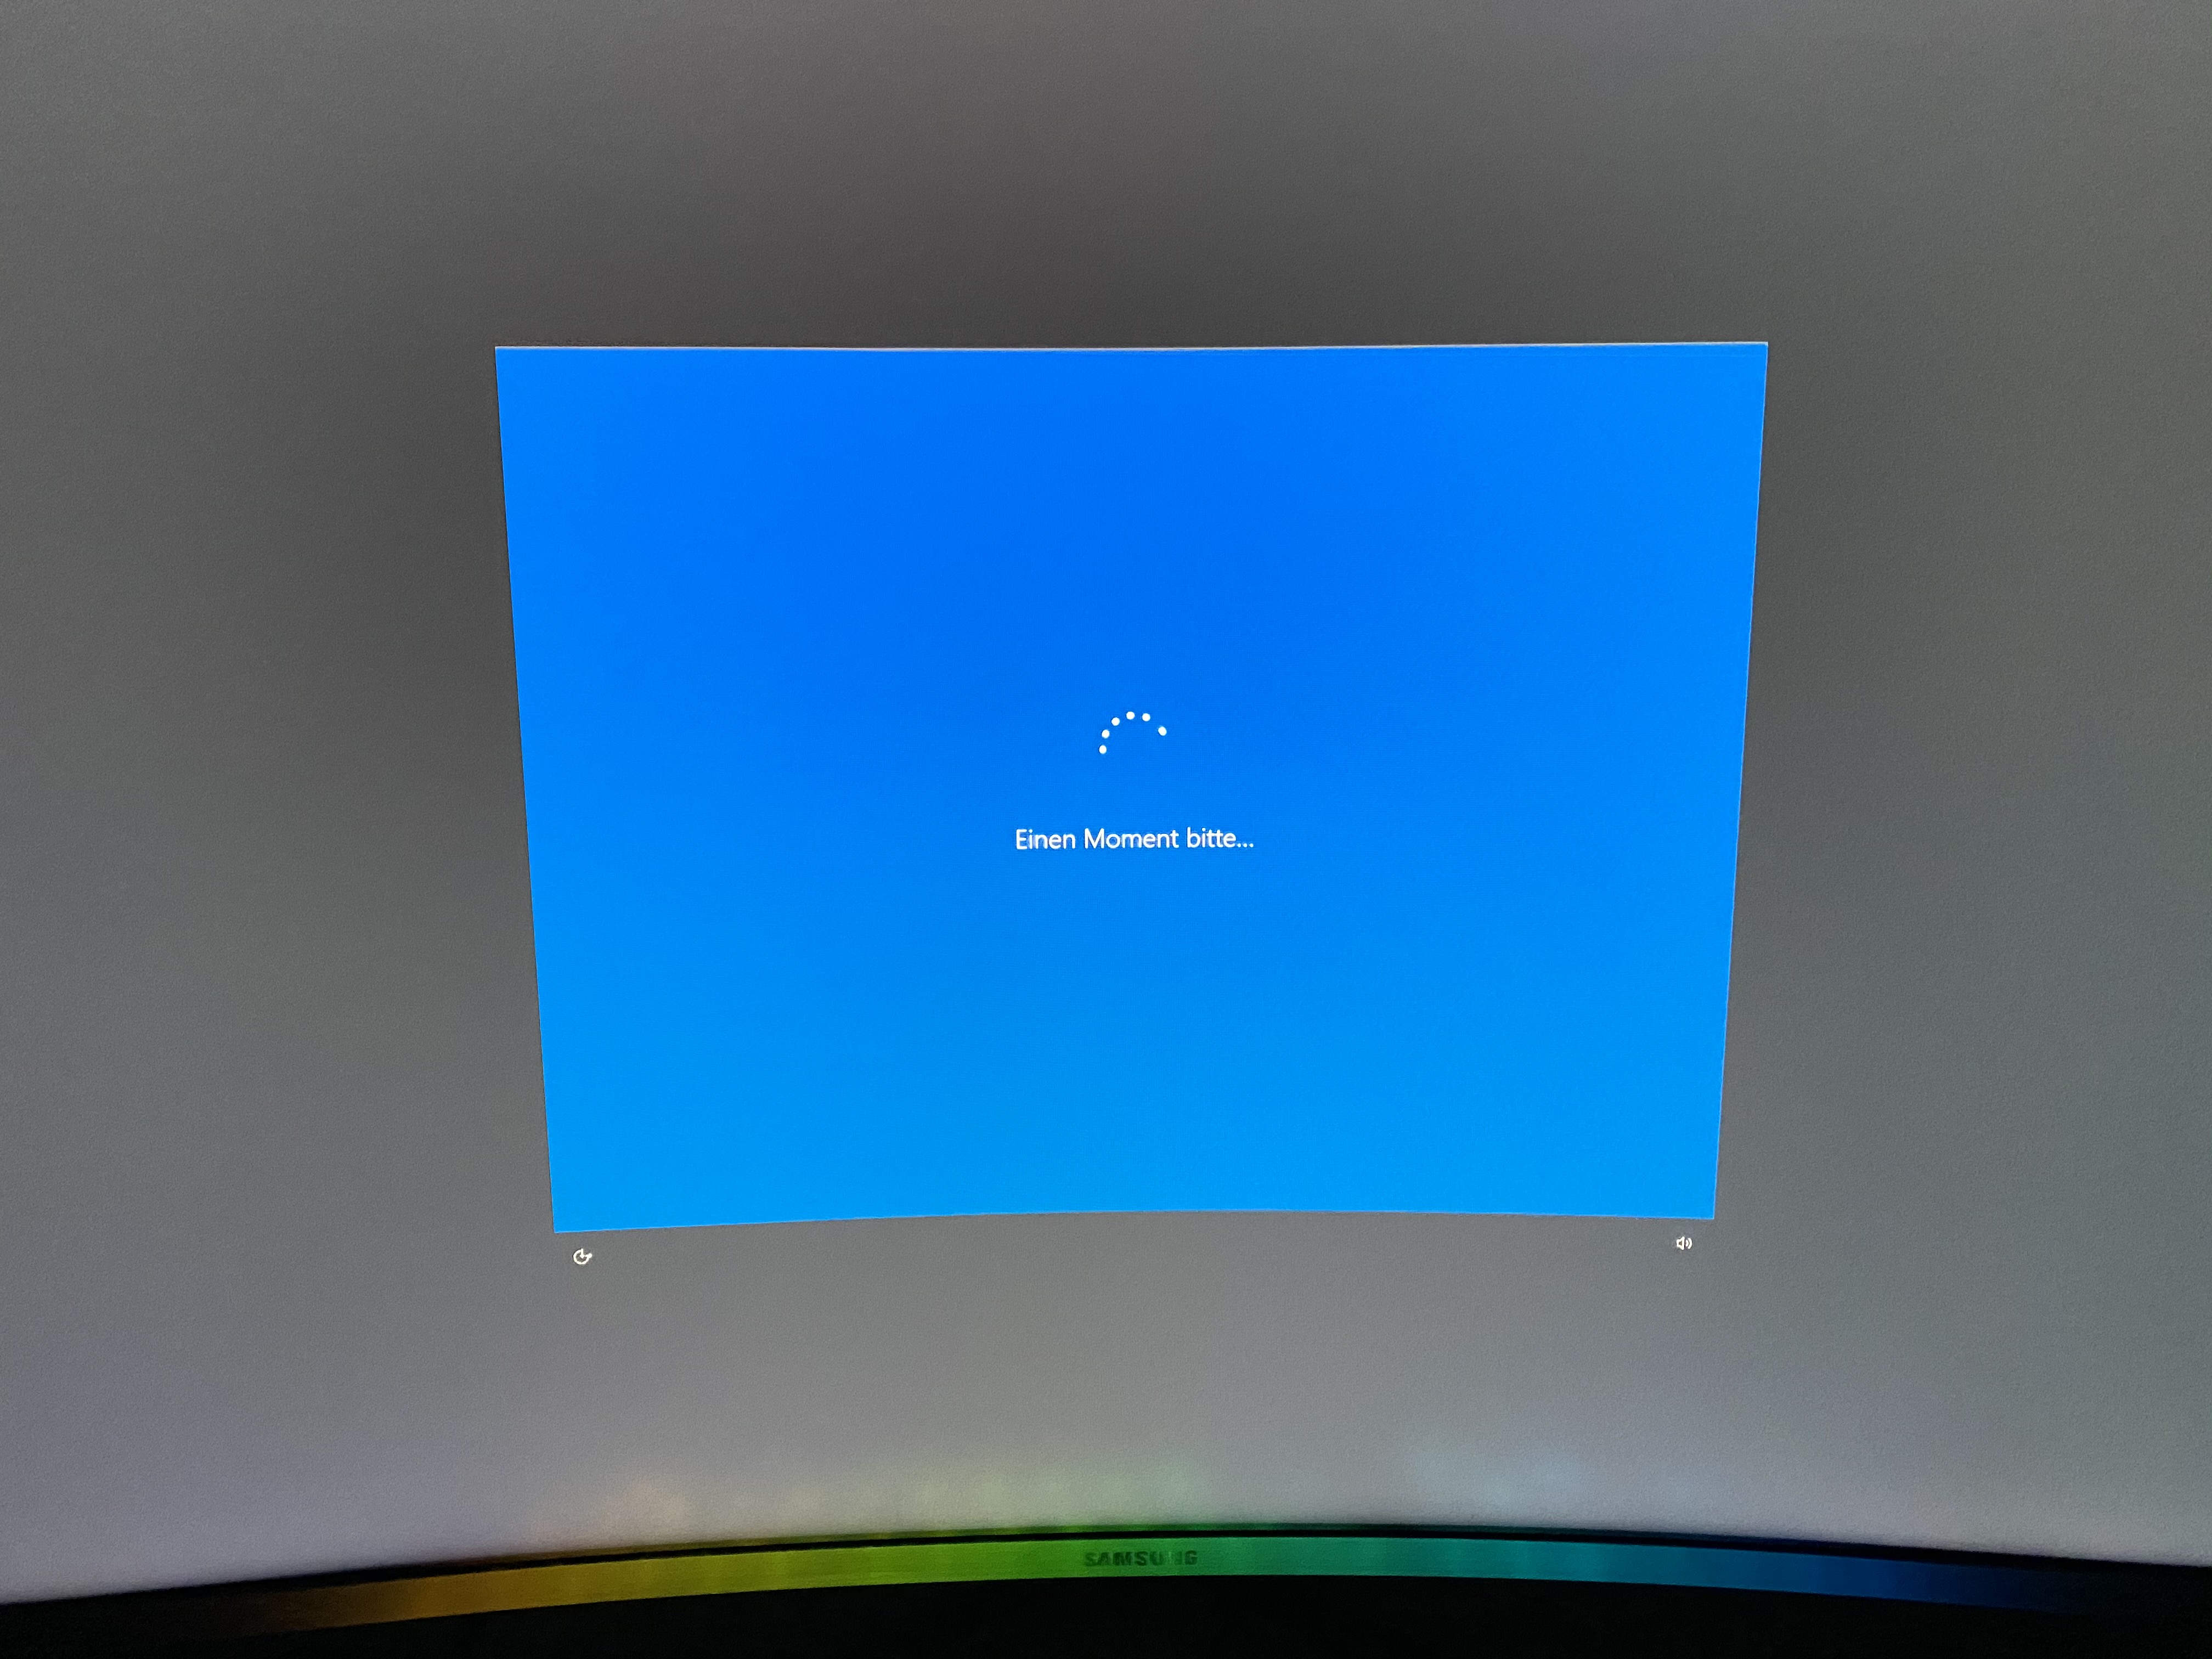 Windows 10 "bitte einen Moment" bei jedem PC start?